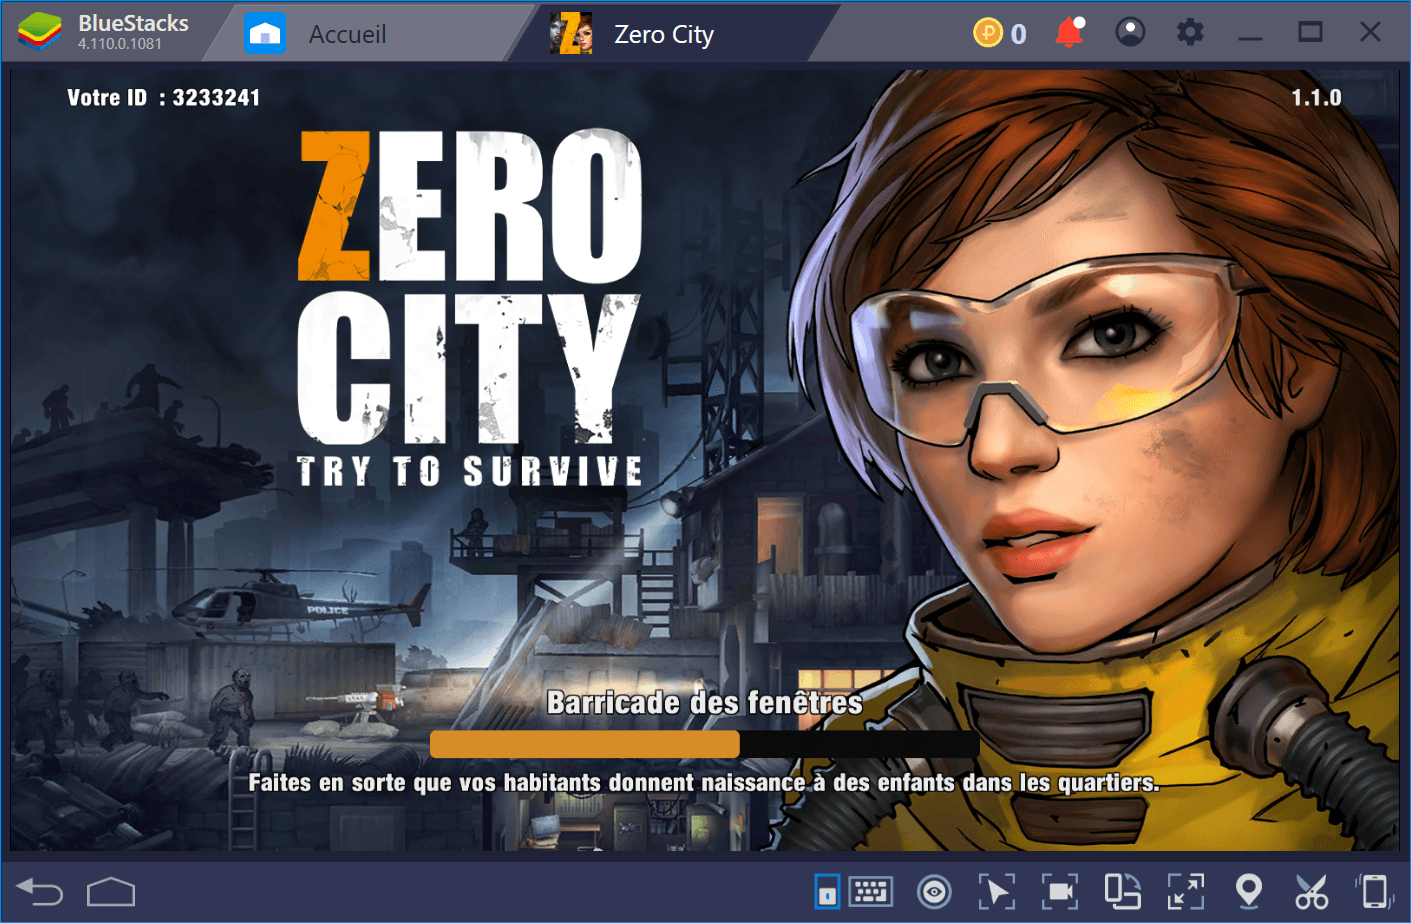 Affrontez les zombies de l’apocalypse dans Zero City avec BlueStacks